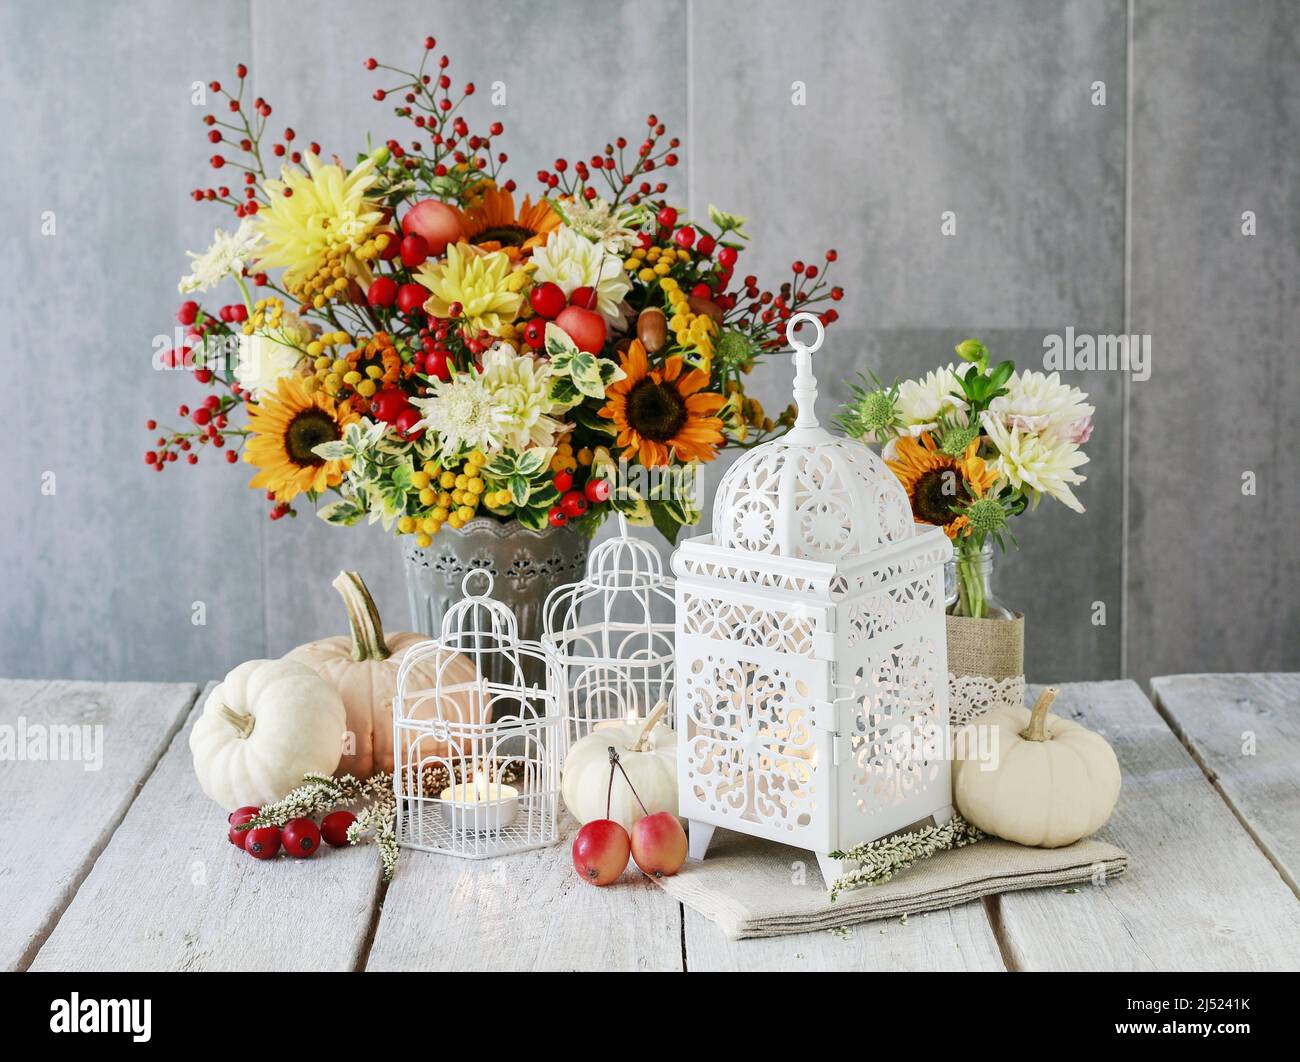 Belle lanterne blanche, fleurs et citrouilles sur la table. Décoration romantique d'automne. Banque D'Images